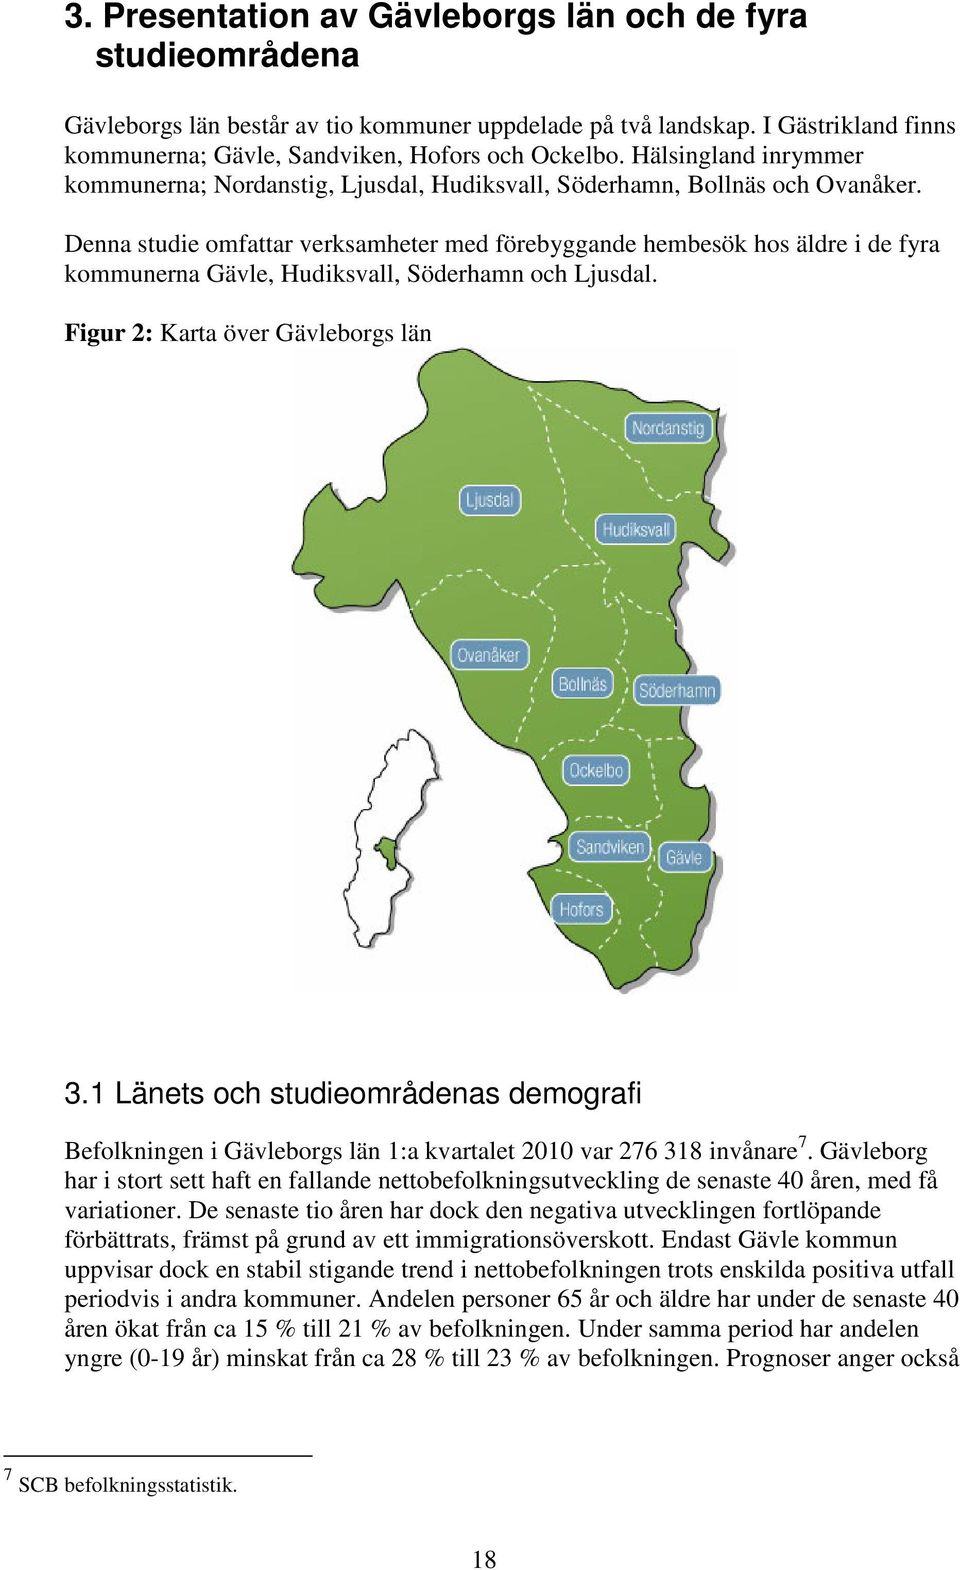 Denna studie mfattar verksamheter med förebyggande hembesök hs äldre i de fyra kmmunerna Gävle, Hudiksvall, Söderhamn ch Ljusdal. Figur 2: Karta över Gävlebrgs län 3.